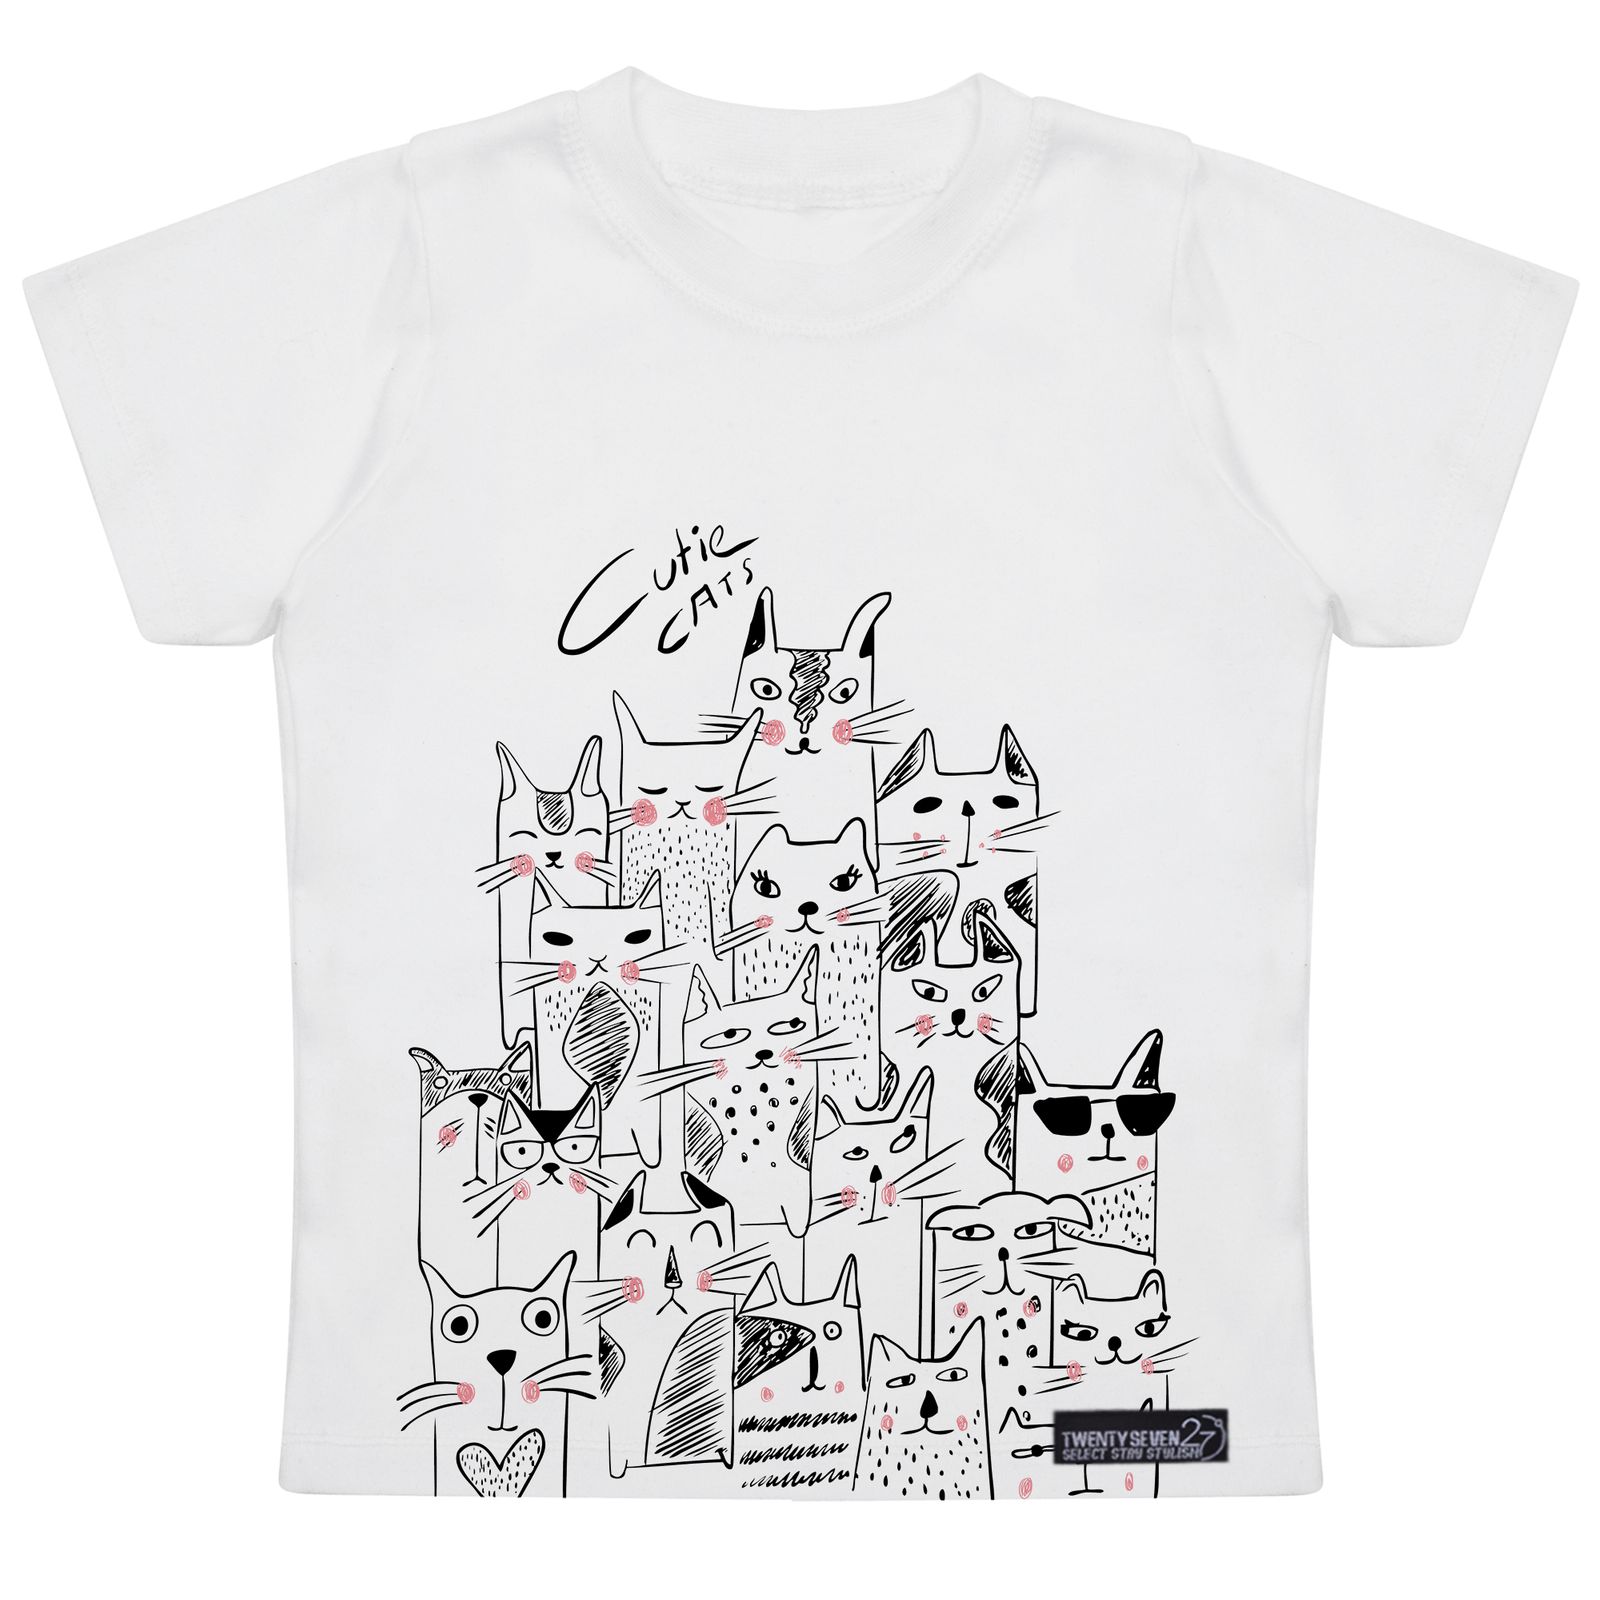 تی شرت آستین کوتاه دخترانه 27 مدل Cute Cats کد MH930 -  - 1